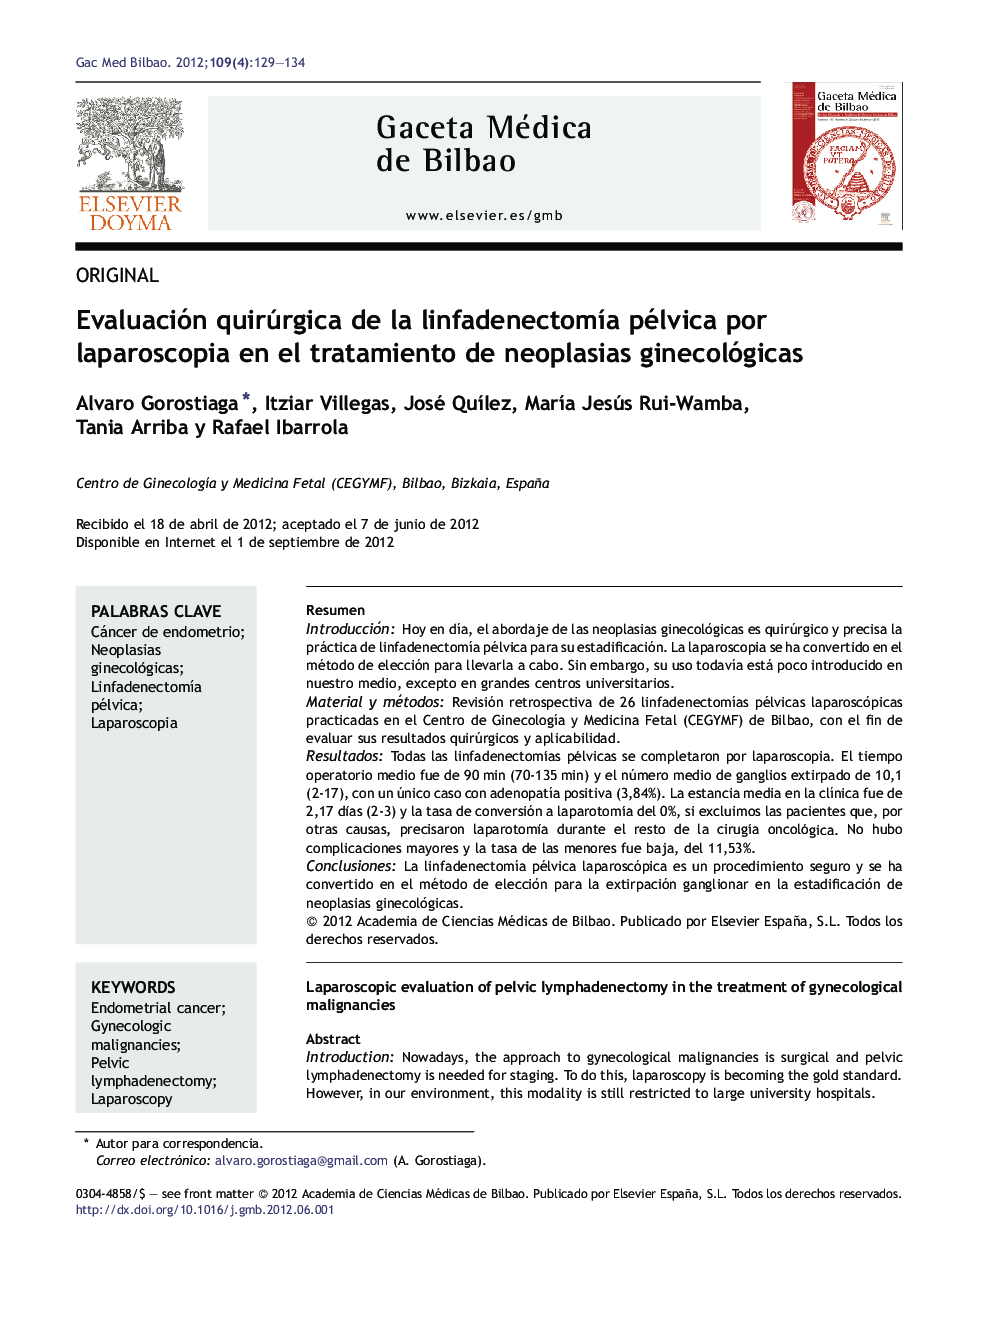 Evaluación quirúrgica de la linfadenectomÃ­a pélvica por laparoscopia en el tratamiento de neoplasias ginecológicas